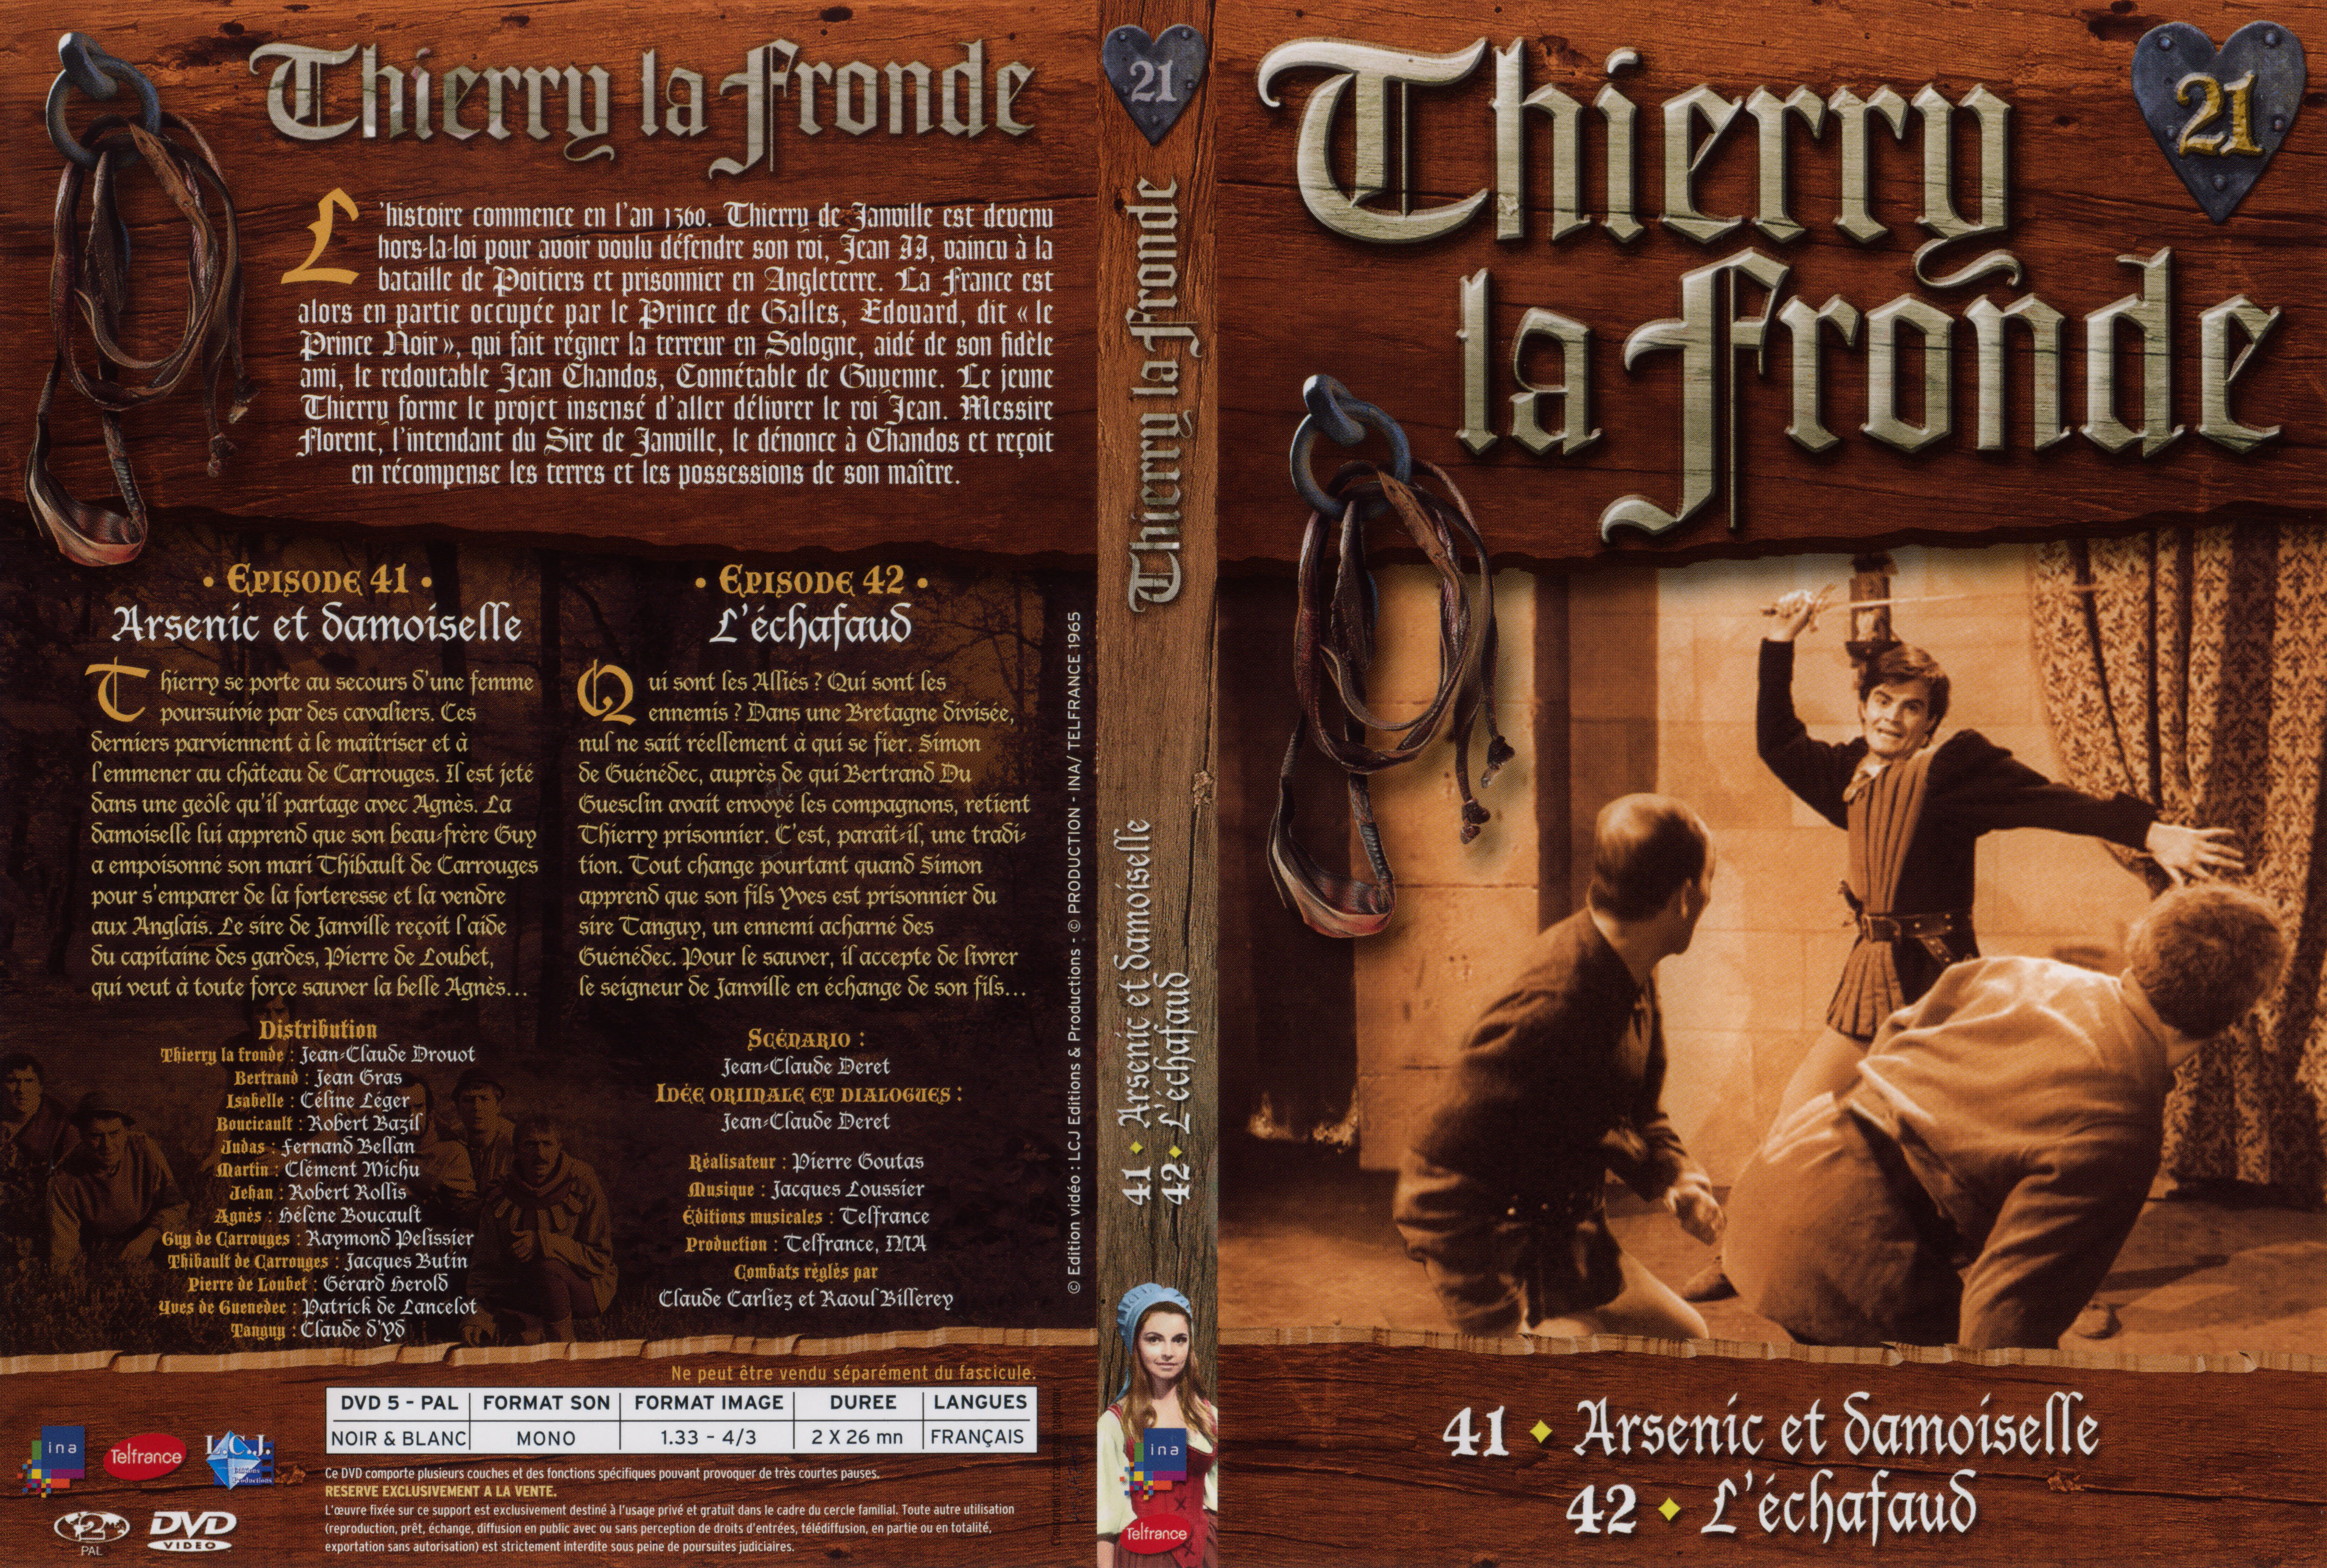 Jaquette DVD Thierry la Fronde vol 21